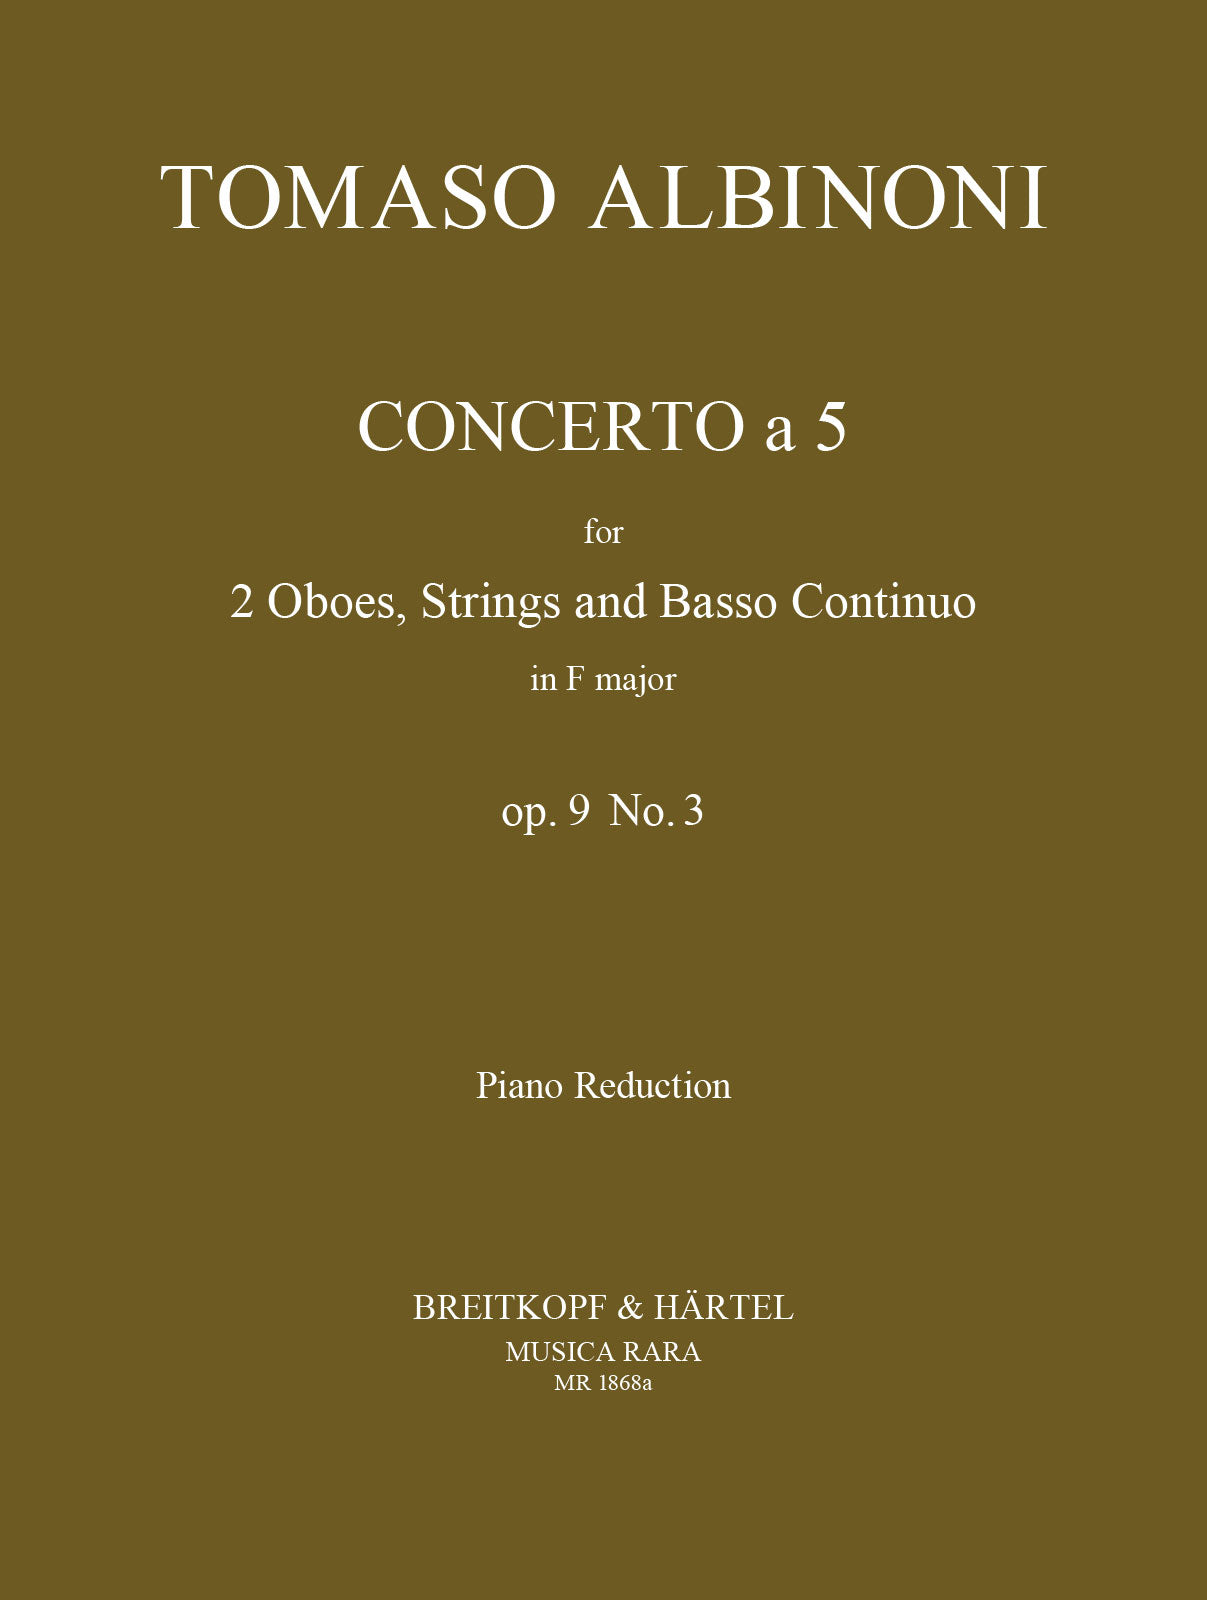 Albinoni: Concerto a cinque in F Major, Op. 9, No. 3